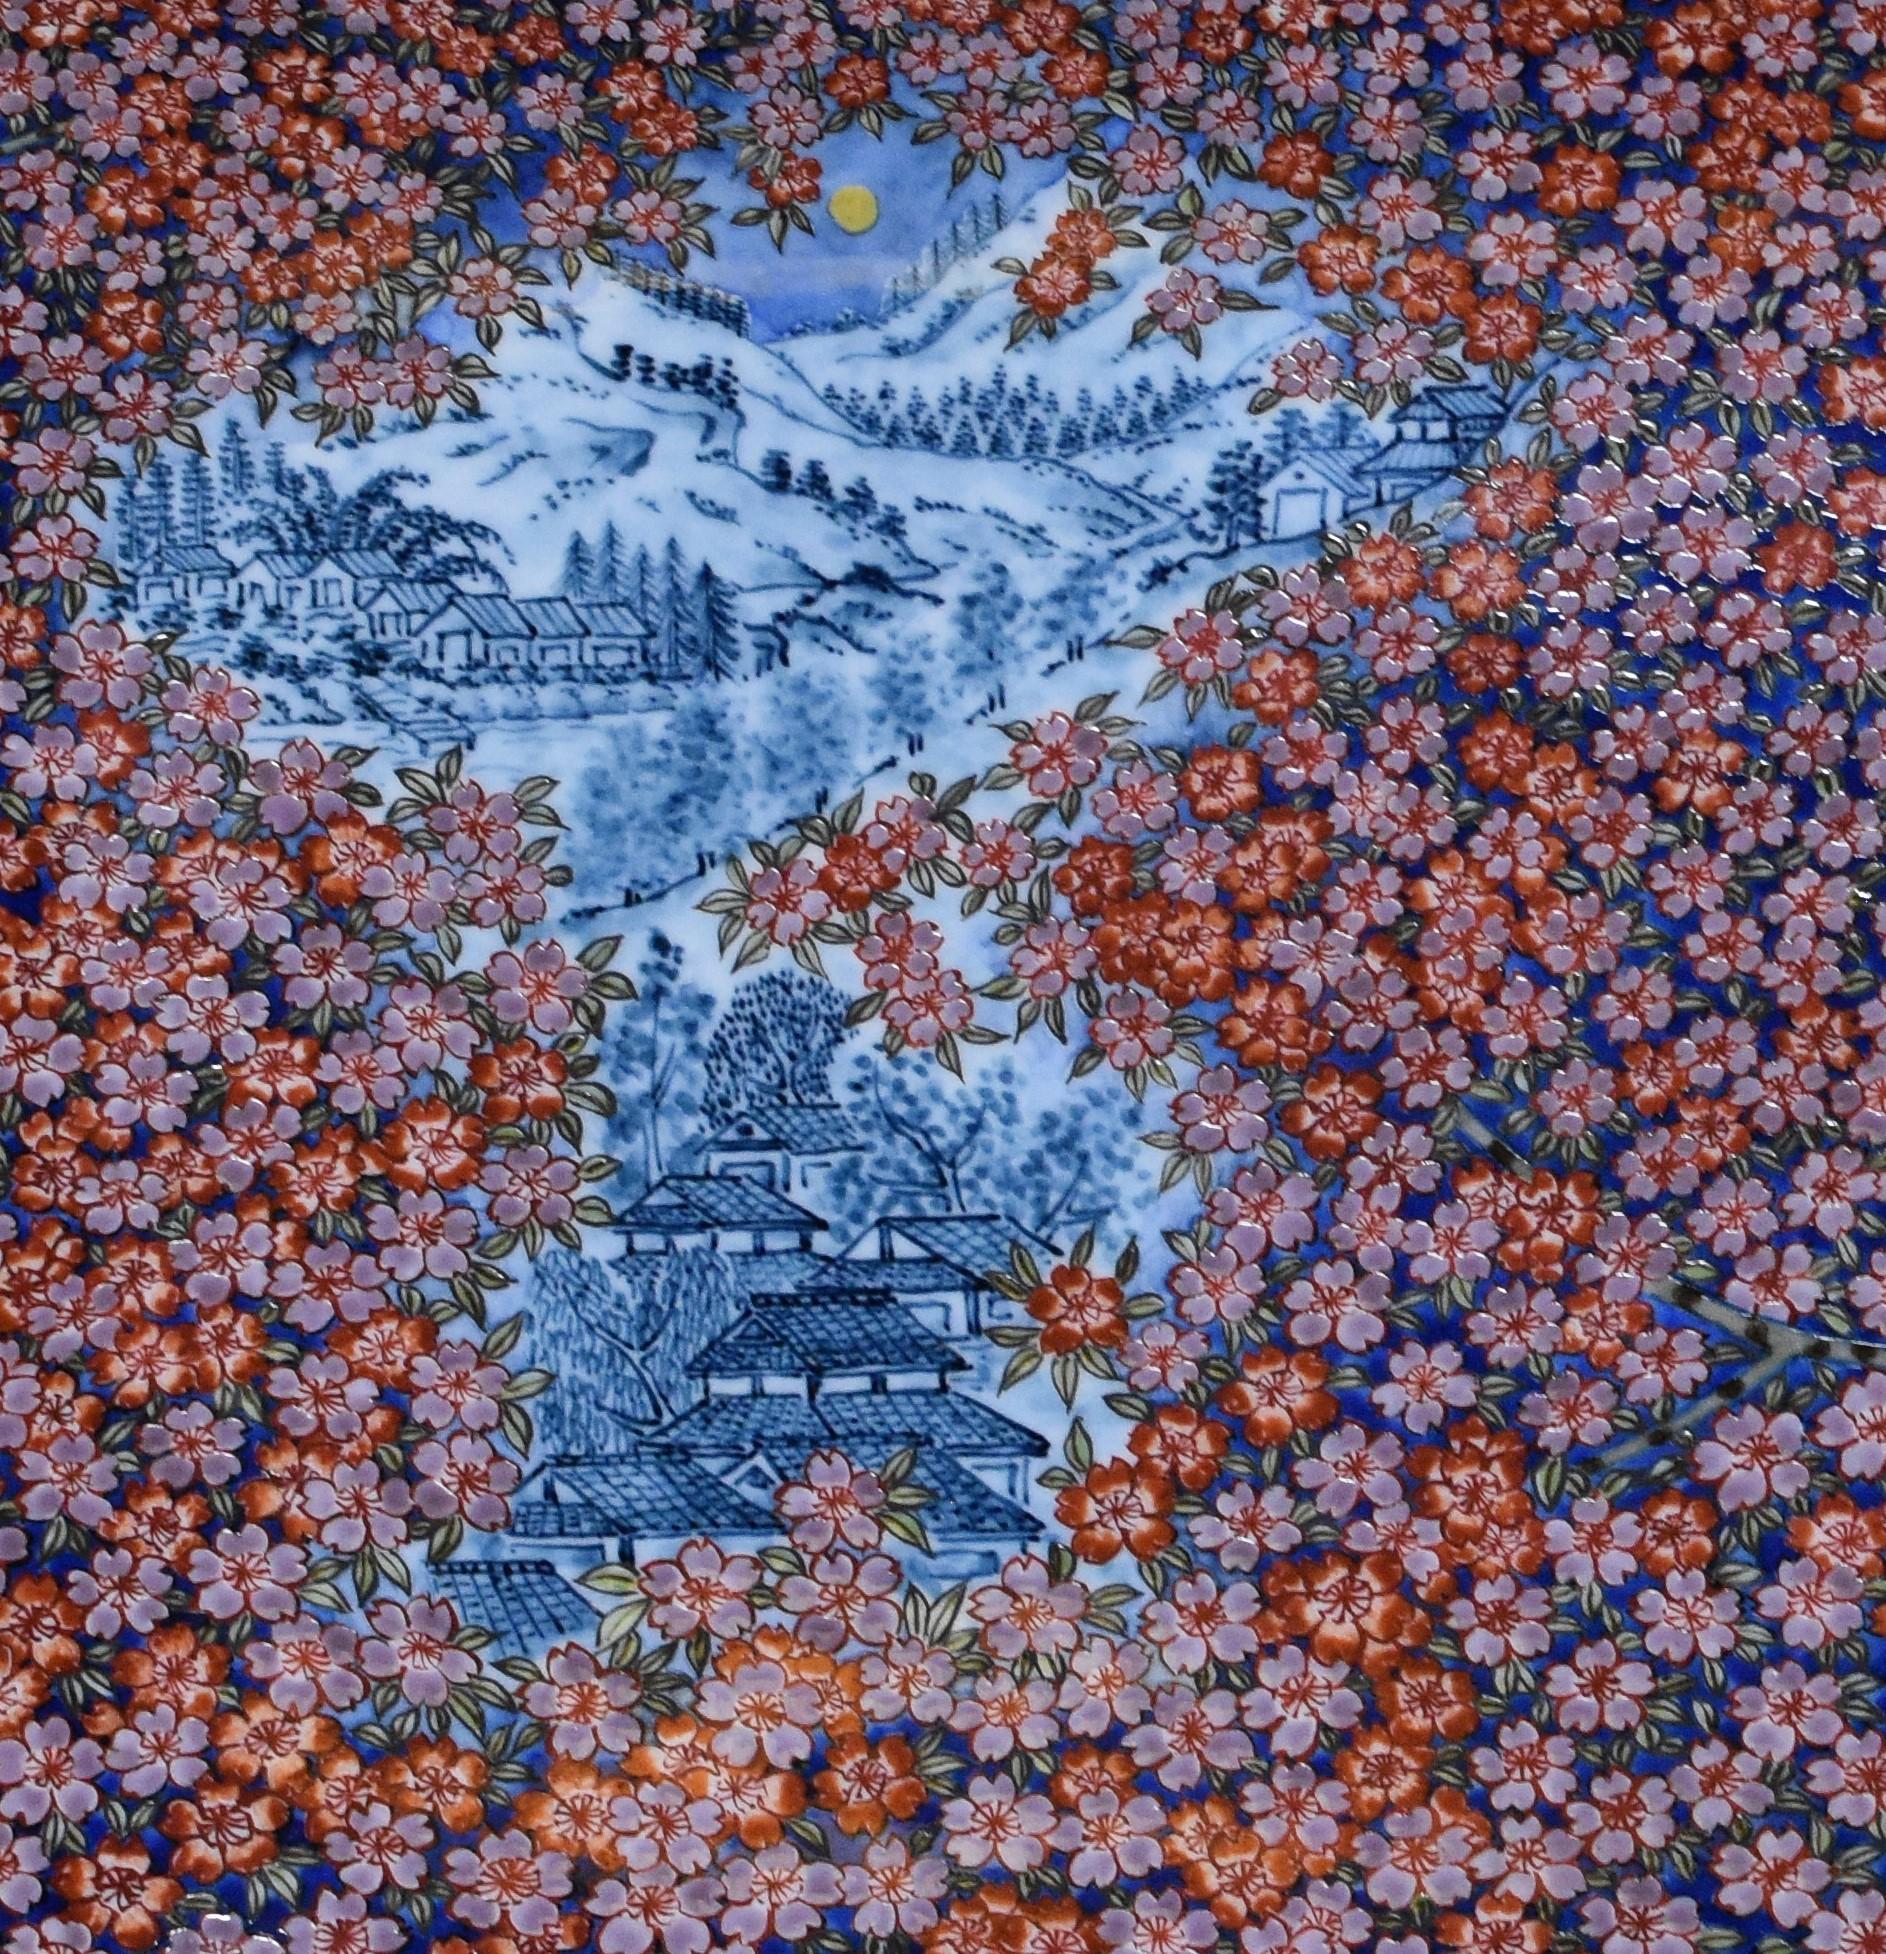 Exquis chargeur/plateau rectangulaire en porcelaine décorative japonaise contemporaine, minutieusement peint à la main en bleu, violet et rouge, un chef-d'œuvre signé par un maître porcelainier de deuxième génération de la région d'Imari-Arita au